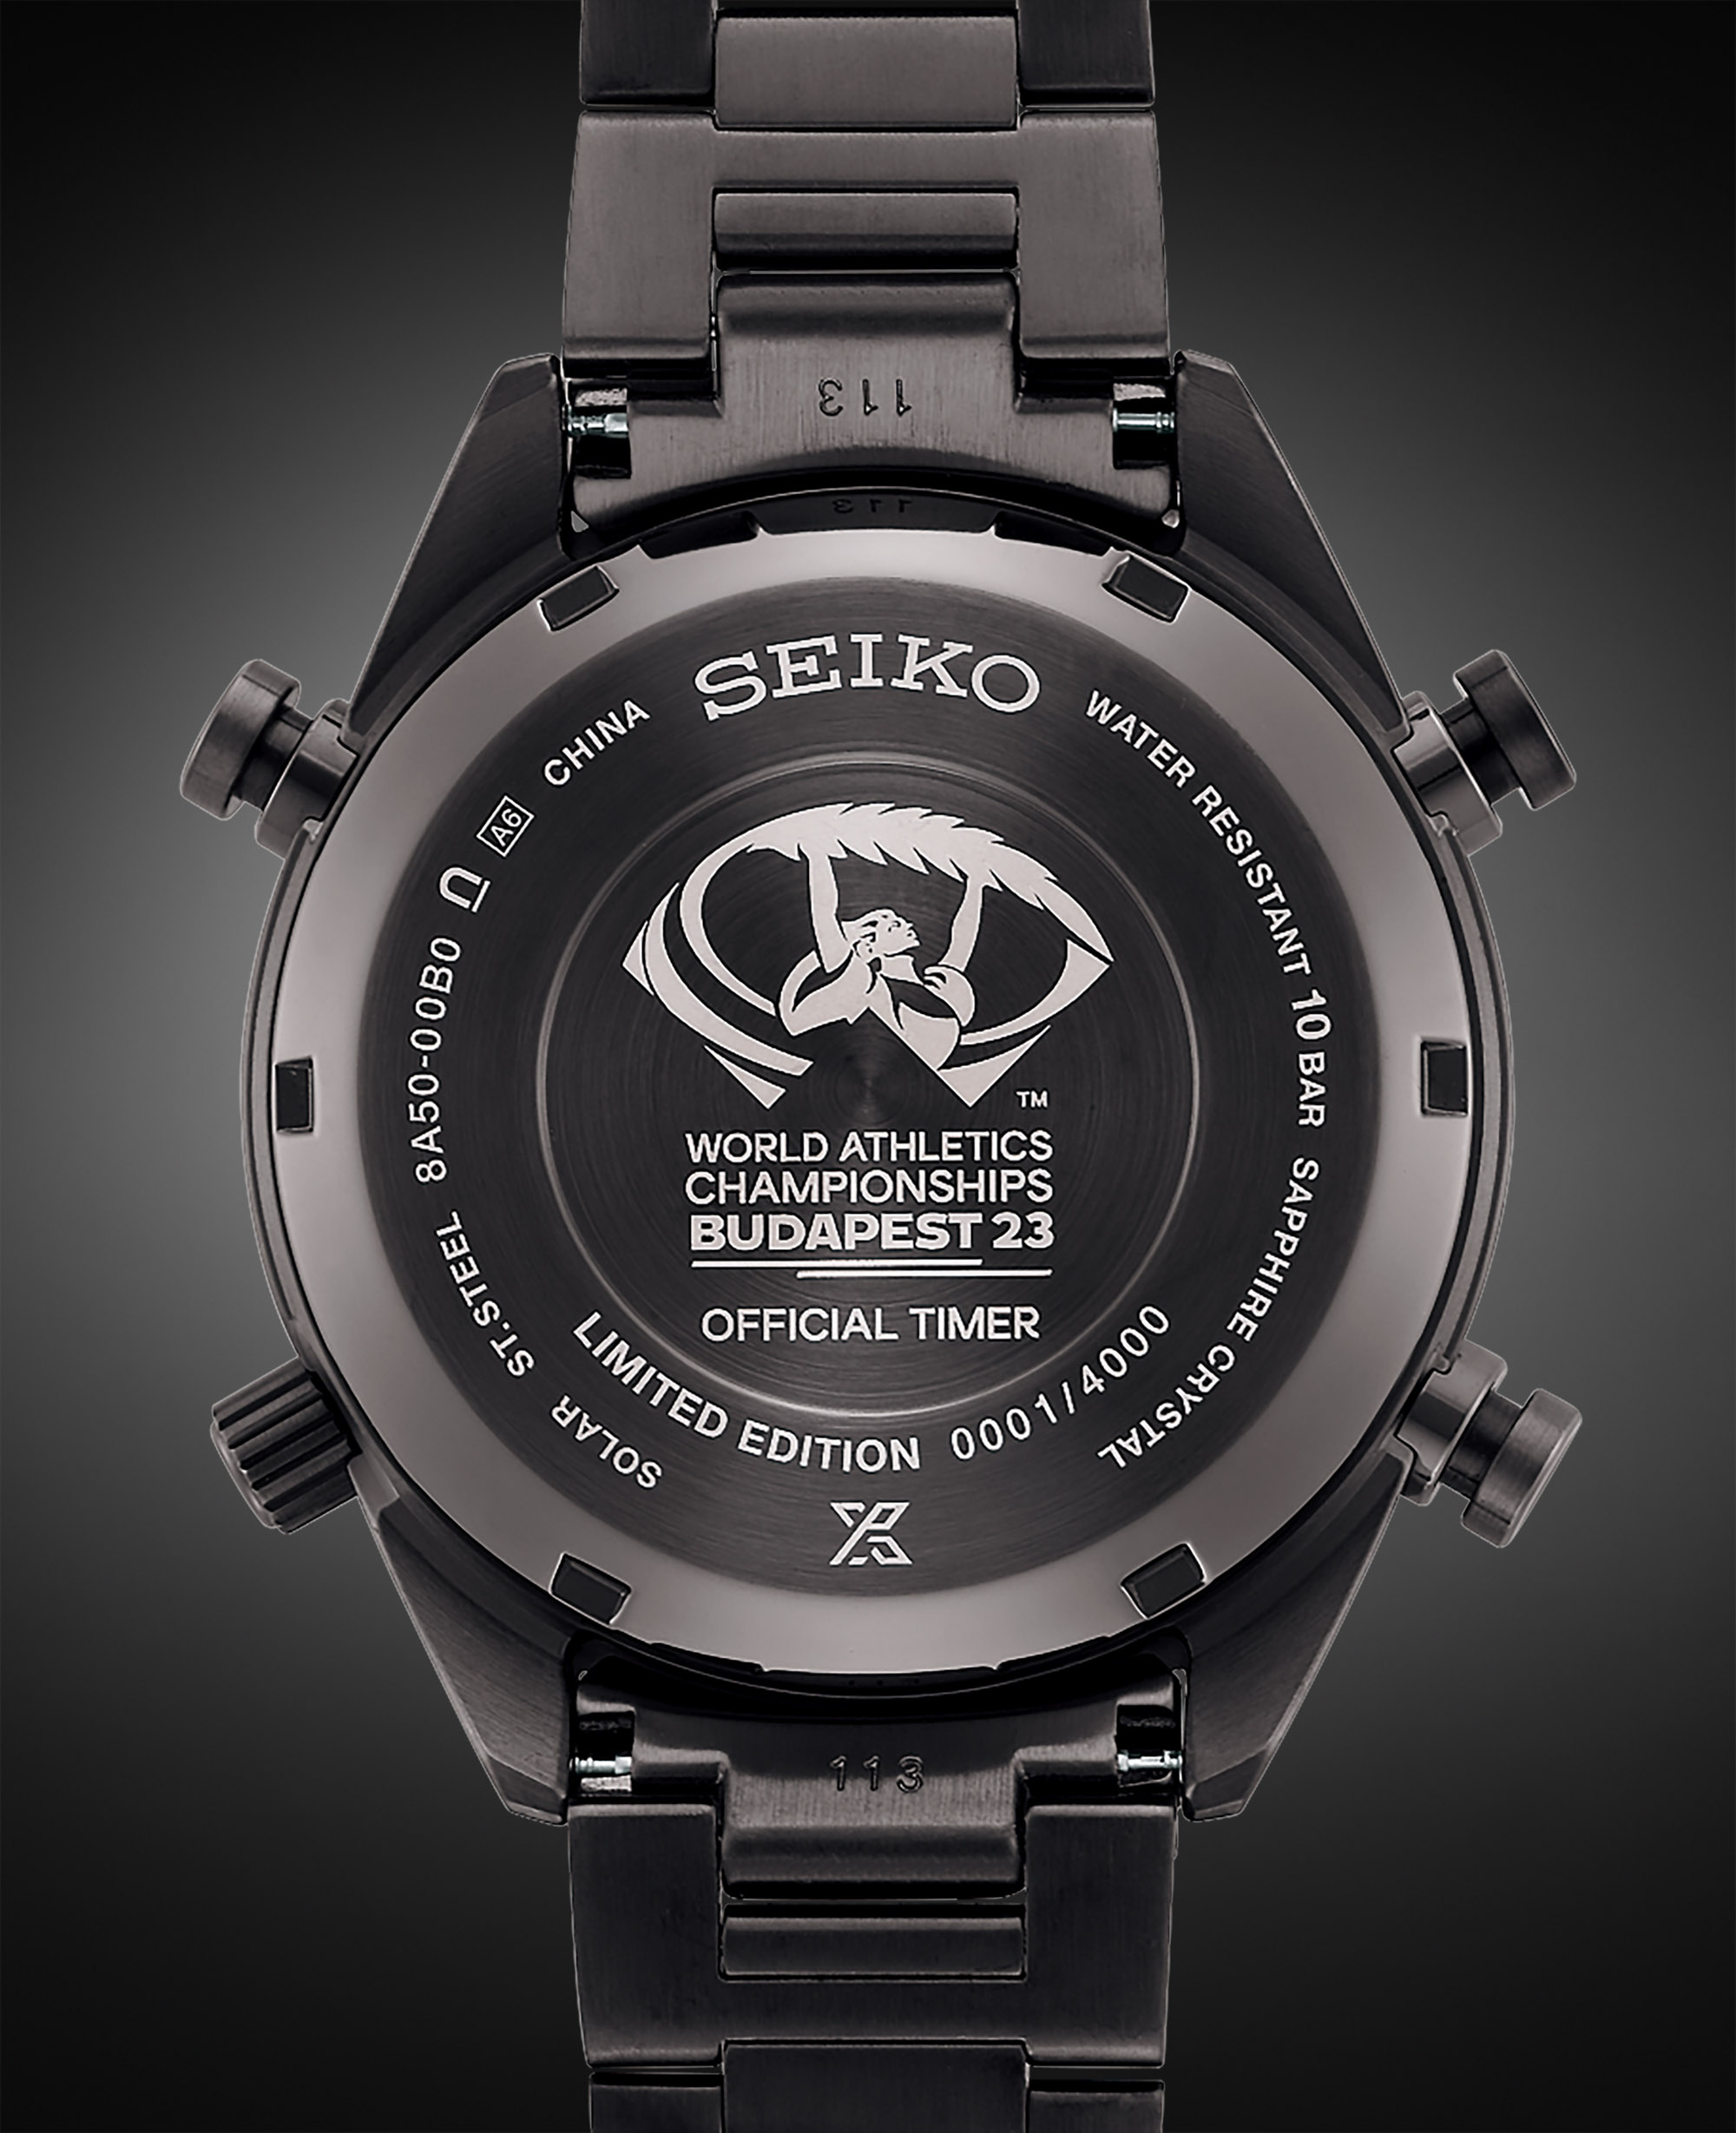 Обзор часов Seiko Prospex Speedtimer Solar Chronograph для чемпионата мира по легкой атлетике в Будапеште